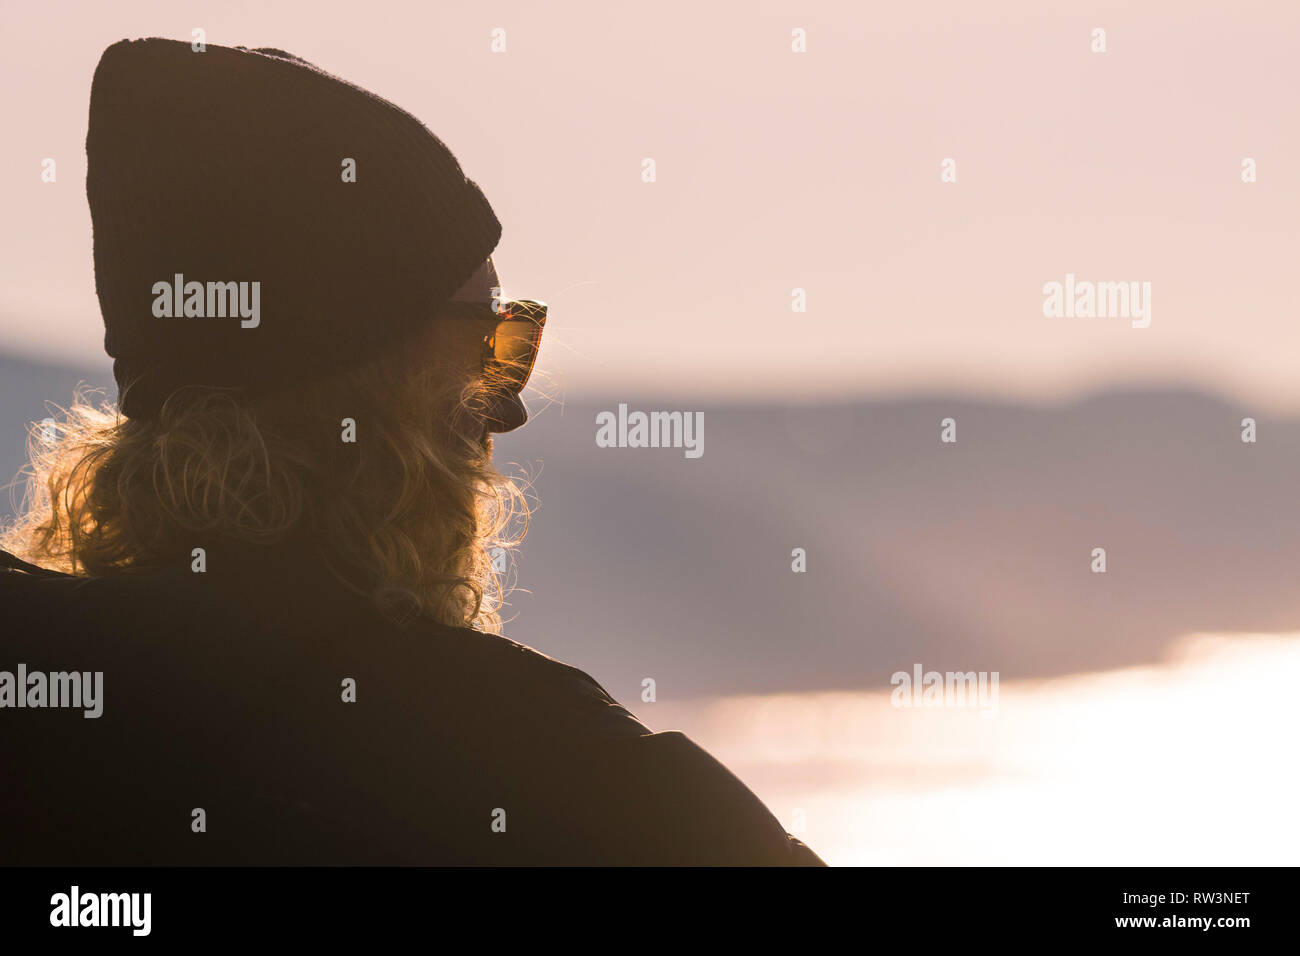 Un homme avec de longs cheveux blonds et portant un bonnet et lunettes de soleil face à la mer. Banque D'Images